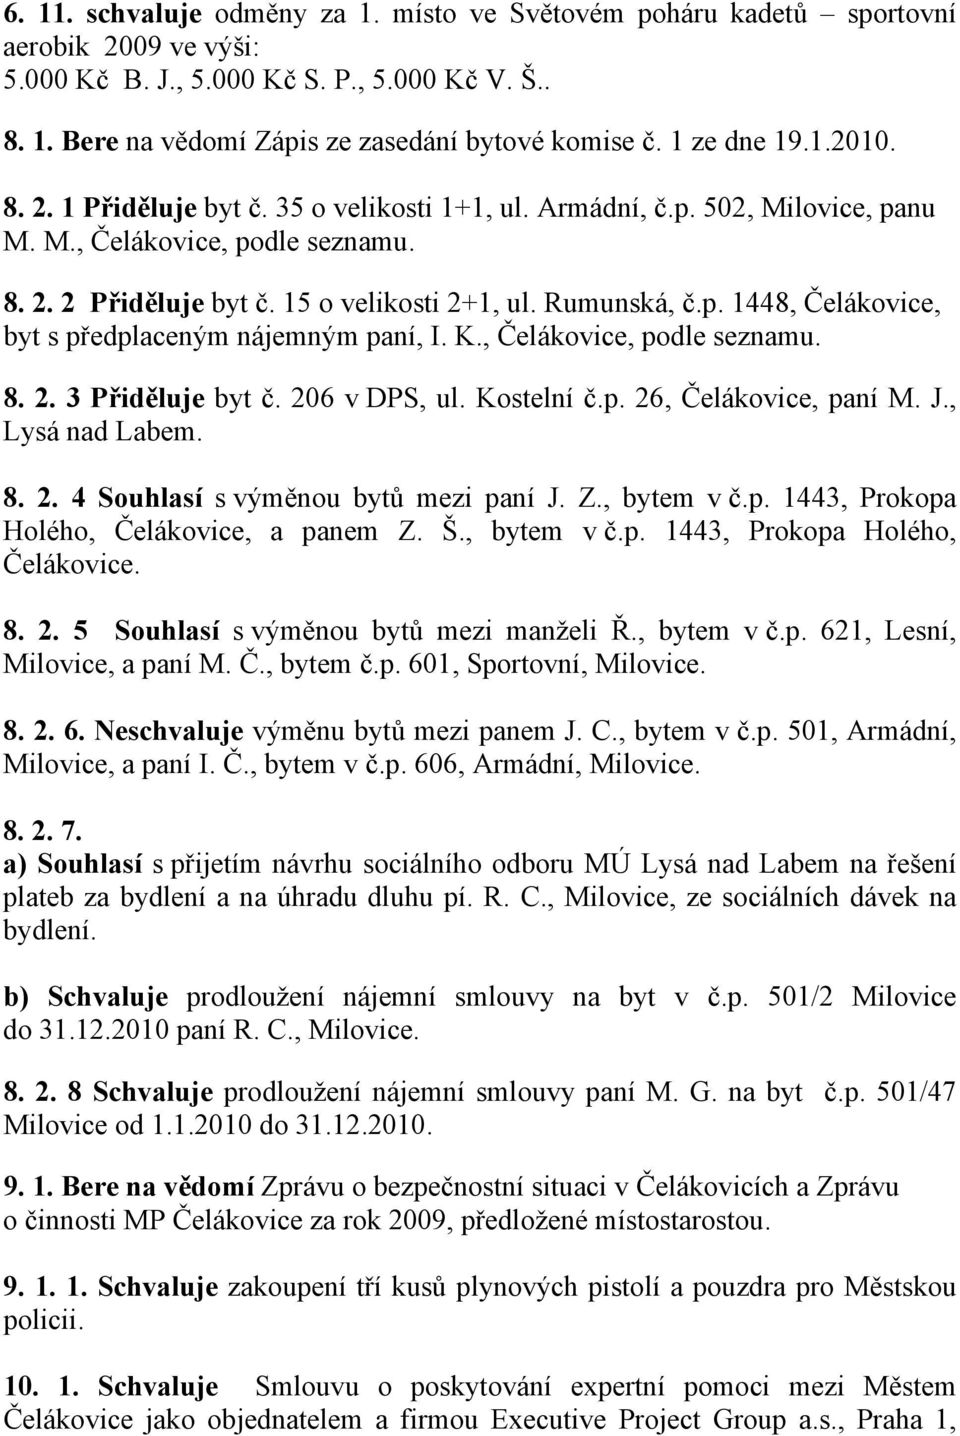 K., Čelákovice, podle seznamu. 8. 2. 3 Přiděluje byt č. 206 v DPS, ul. Kostelní č.p. 26, Čelákovice, paní M. J., Lysá nad Labem. 8. 2. 4 Souhlasí s výměnou bytů mezi paní J. Z., bytem v č.p. 1443, Prokopa Holého, Čelákovice, a panem Z.